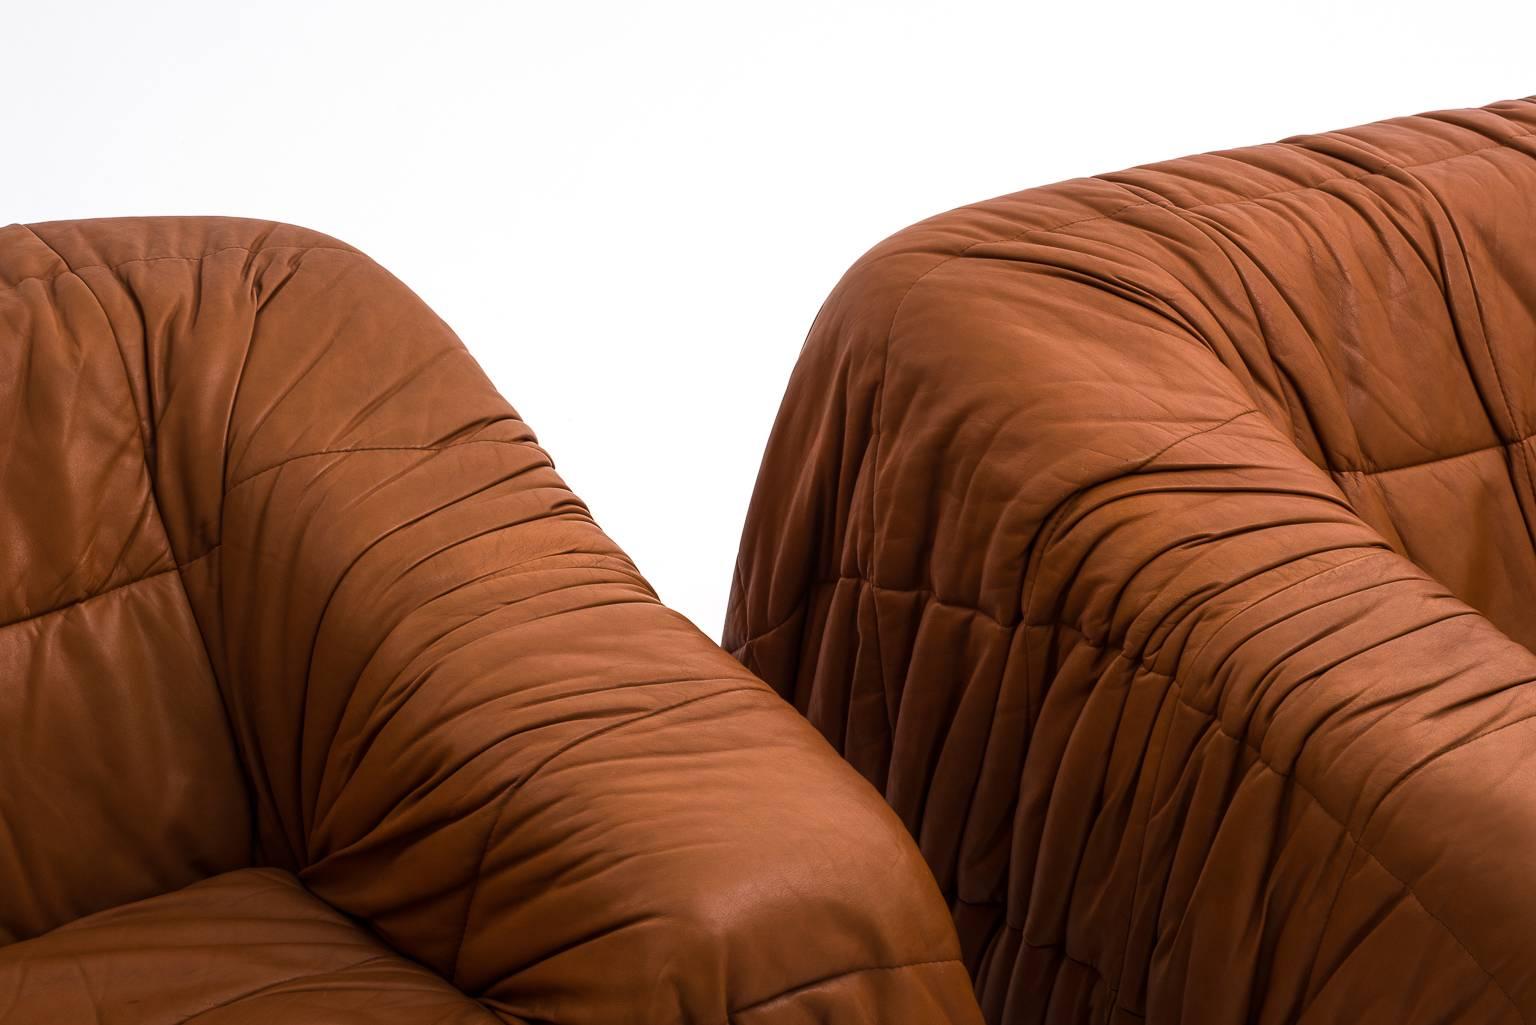 Late 20th Century Distinctive 'Piumino' Lounge Chairs by De Pas D'urbino & Lomazzi for Dell'Oca